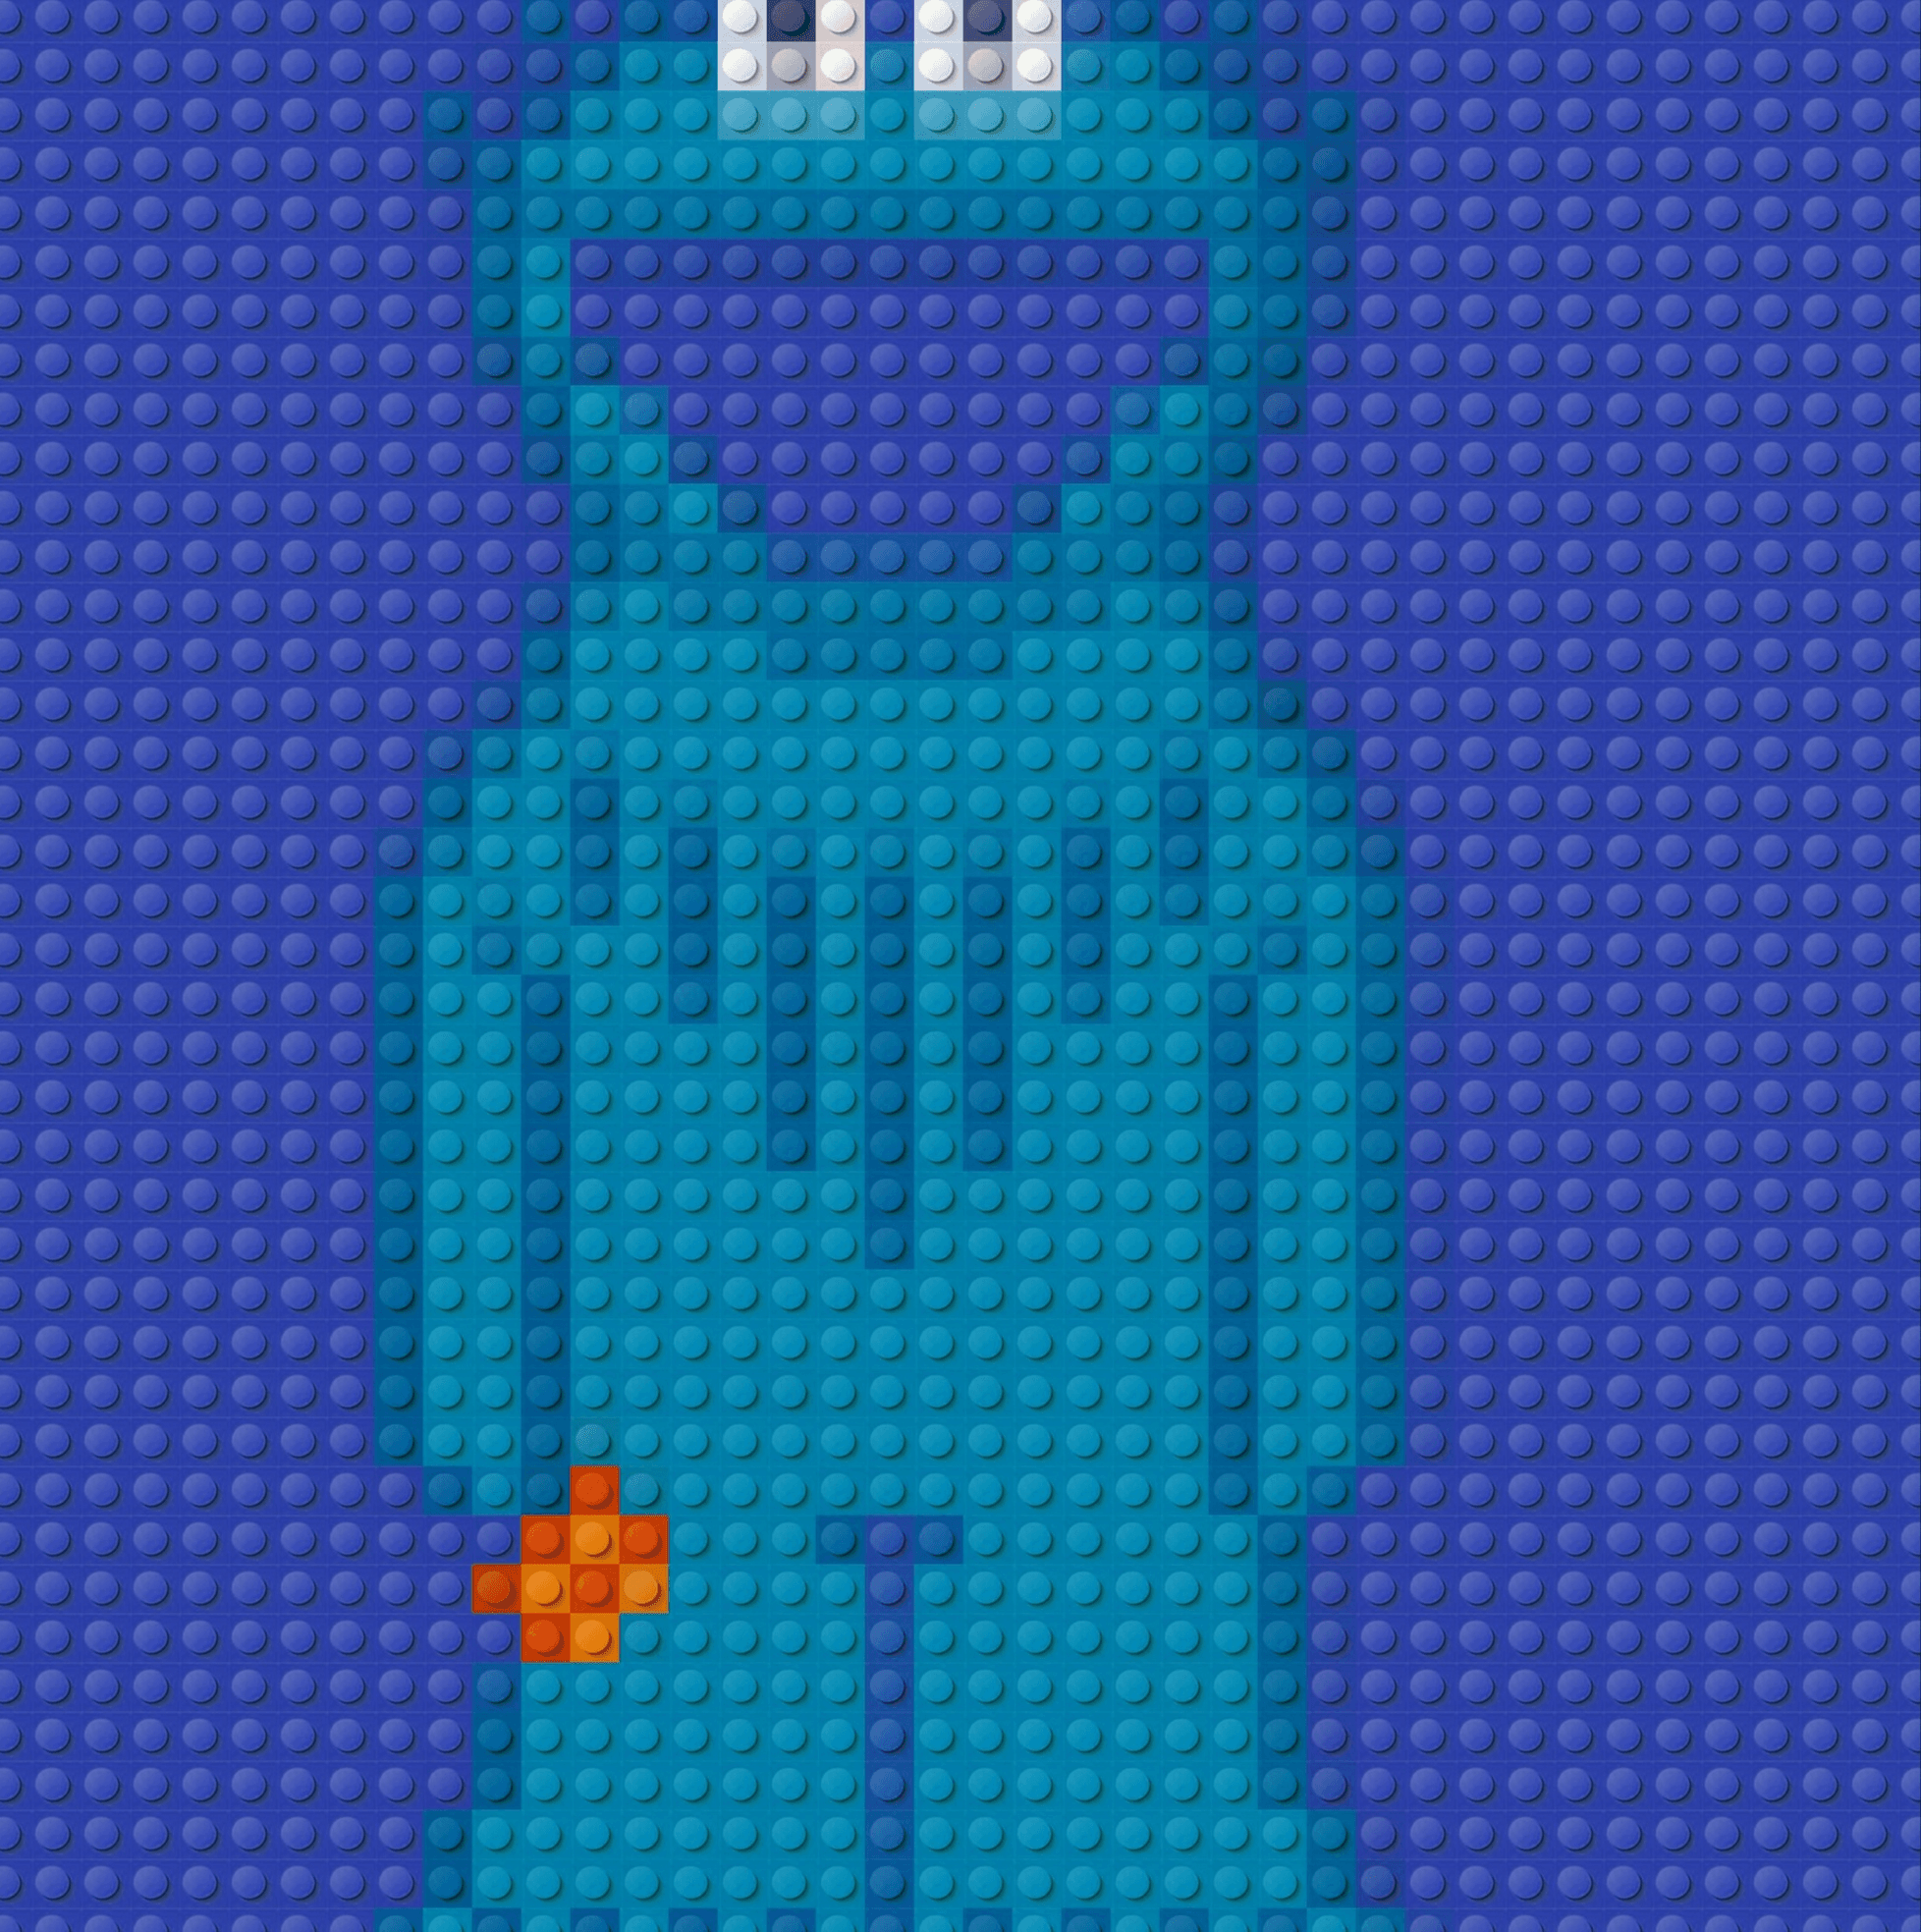 Mouni Roy Xnxx Com - Sesame Street. Cookie Monster - Crypto Television | OpenSea